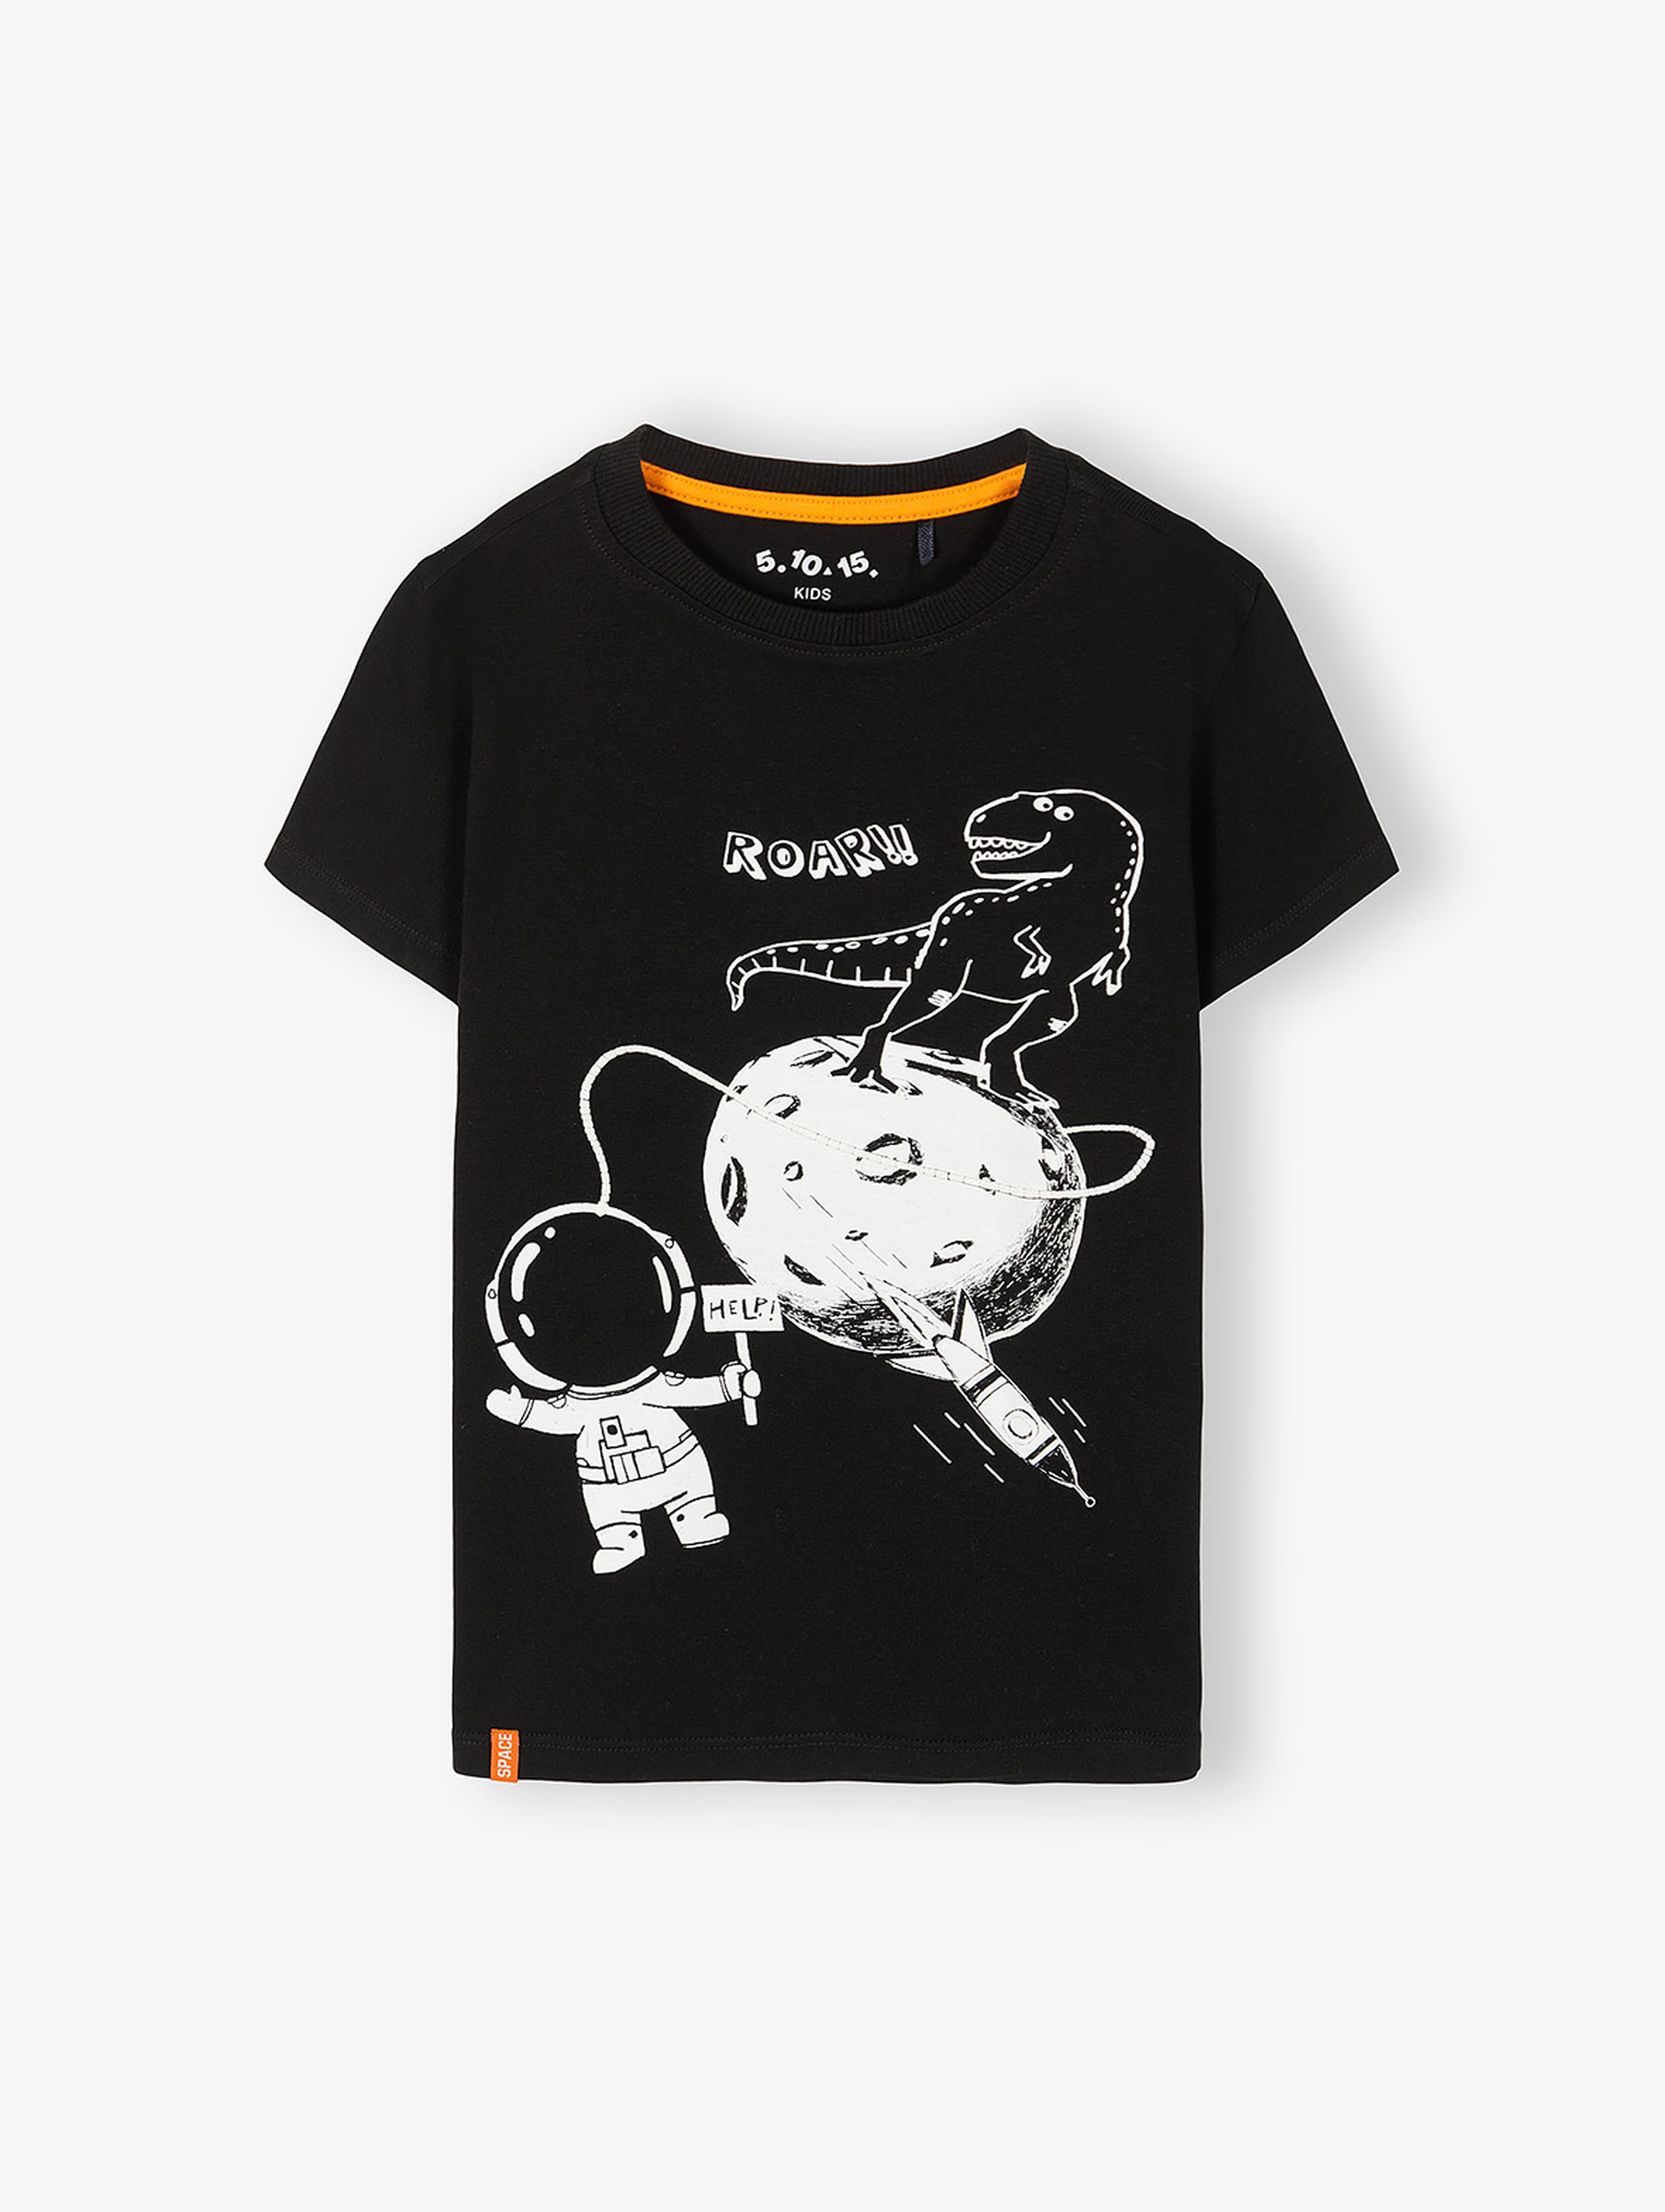 Koszulka chłopięca bawełniana czarna z astronautą